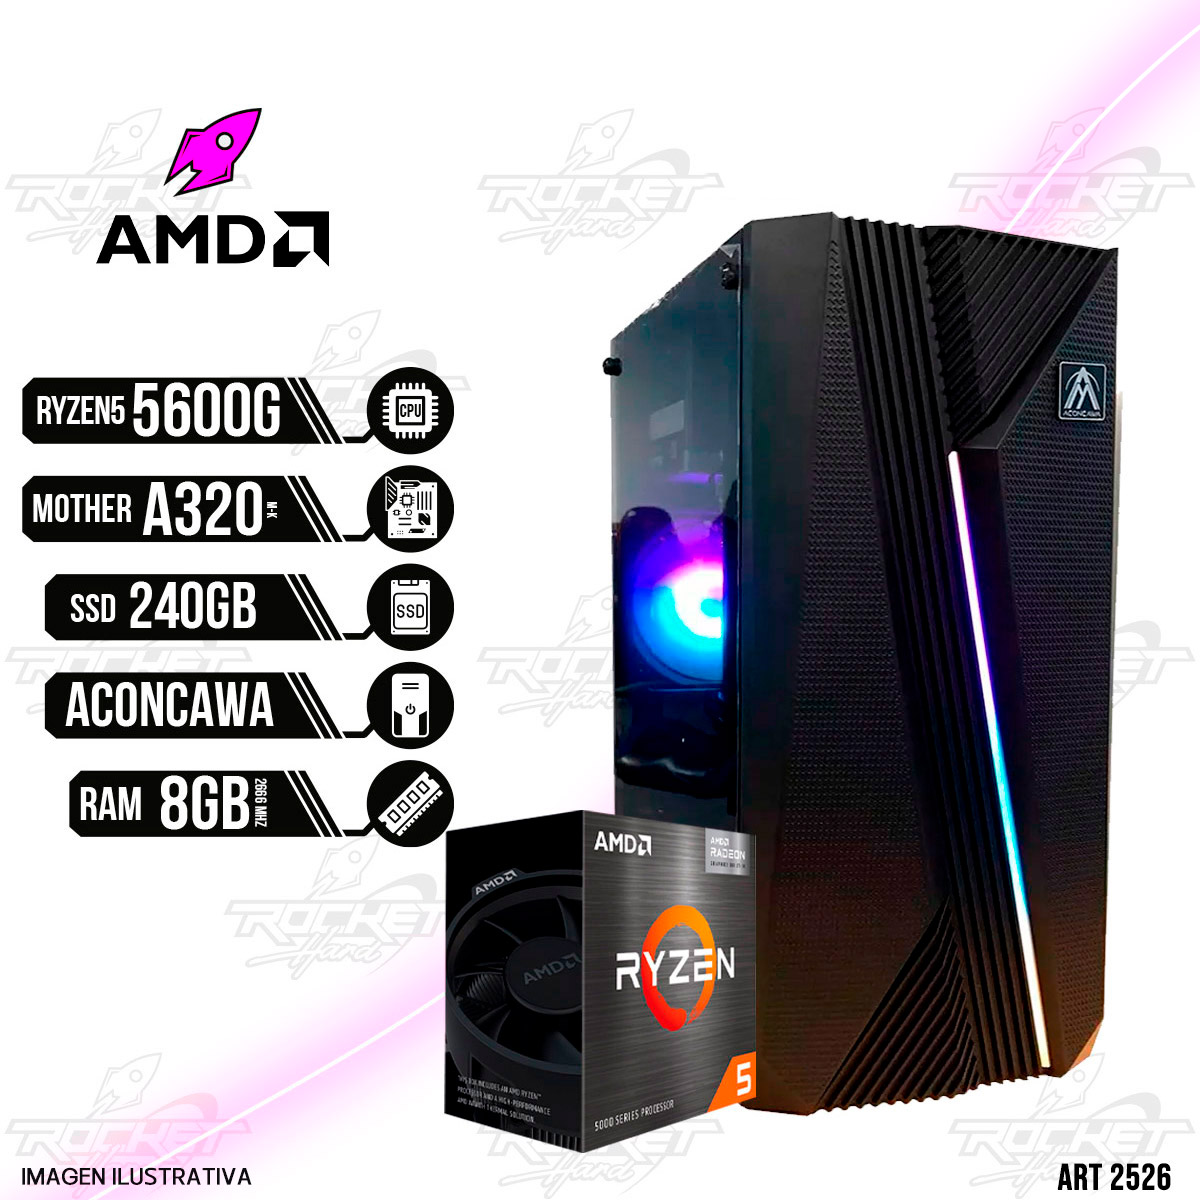 PC ROCKET AMD RYZEN 5 5600G - A320 - 8GB RAM - GABINETE RGB